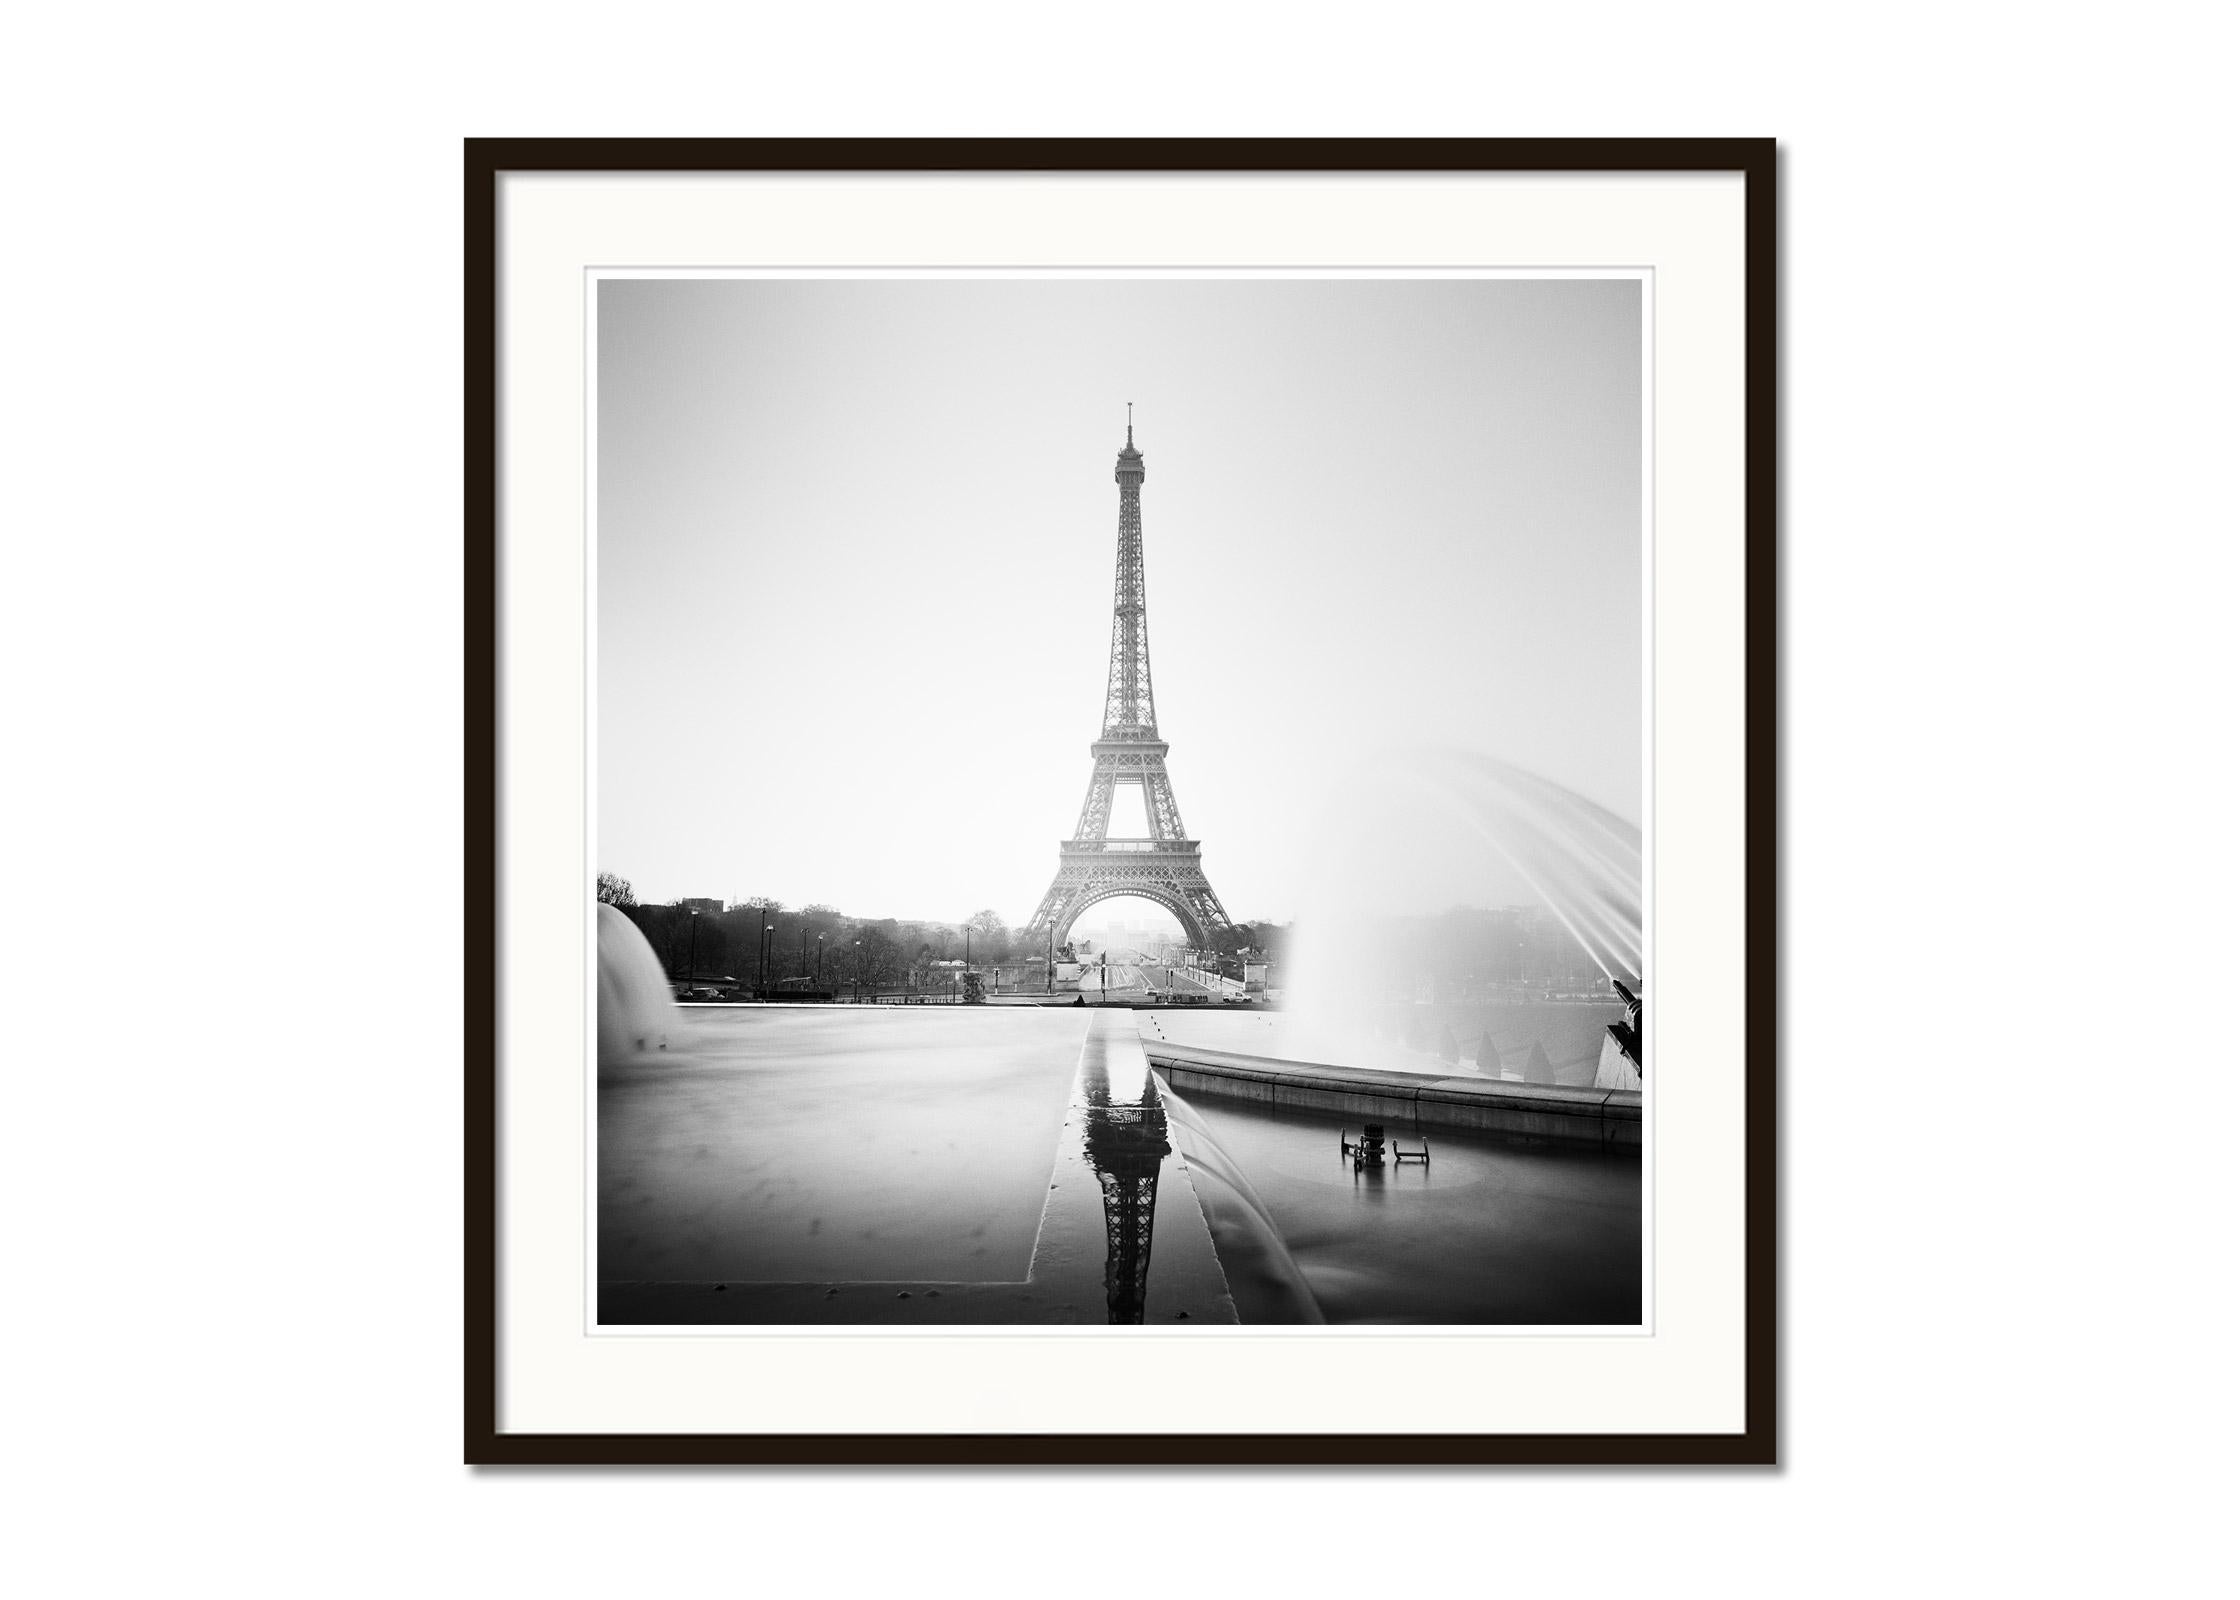 Eiffelturm Fontaine du trocadero Paris, Schwarz-Weiß-Stadtlandschaftsfotografie (Grau), Landscape Photograph, von Gerald Berghammer, Ina Forstinger